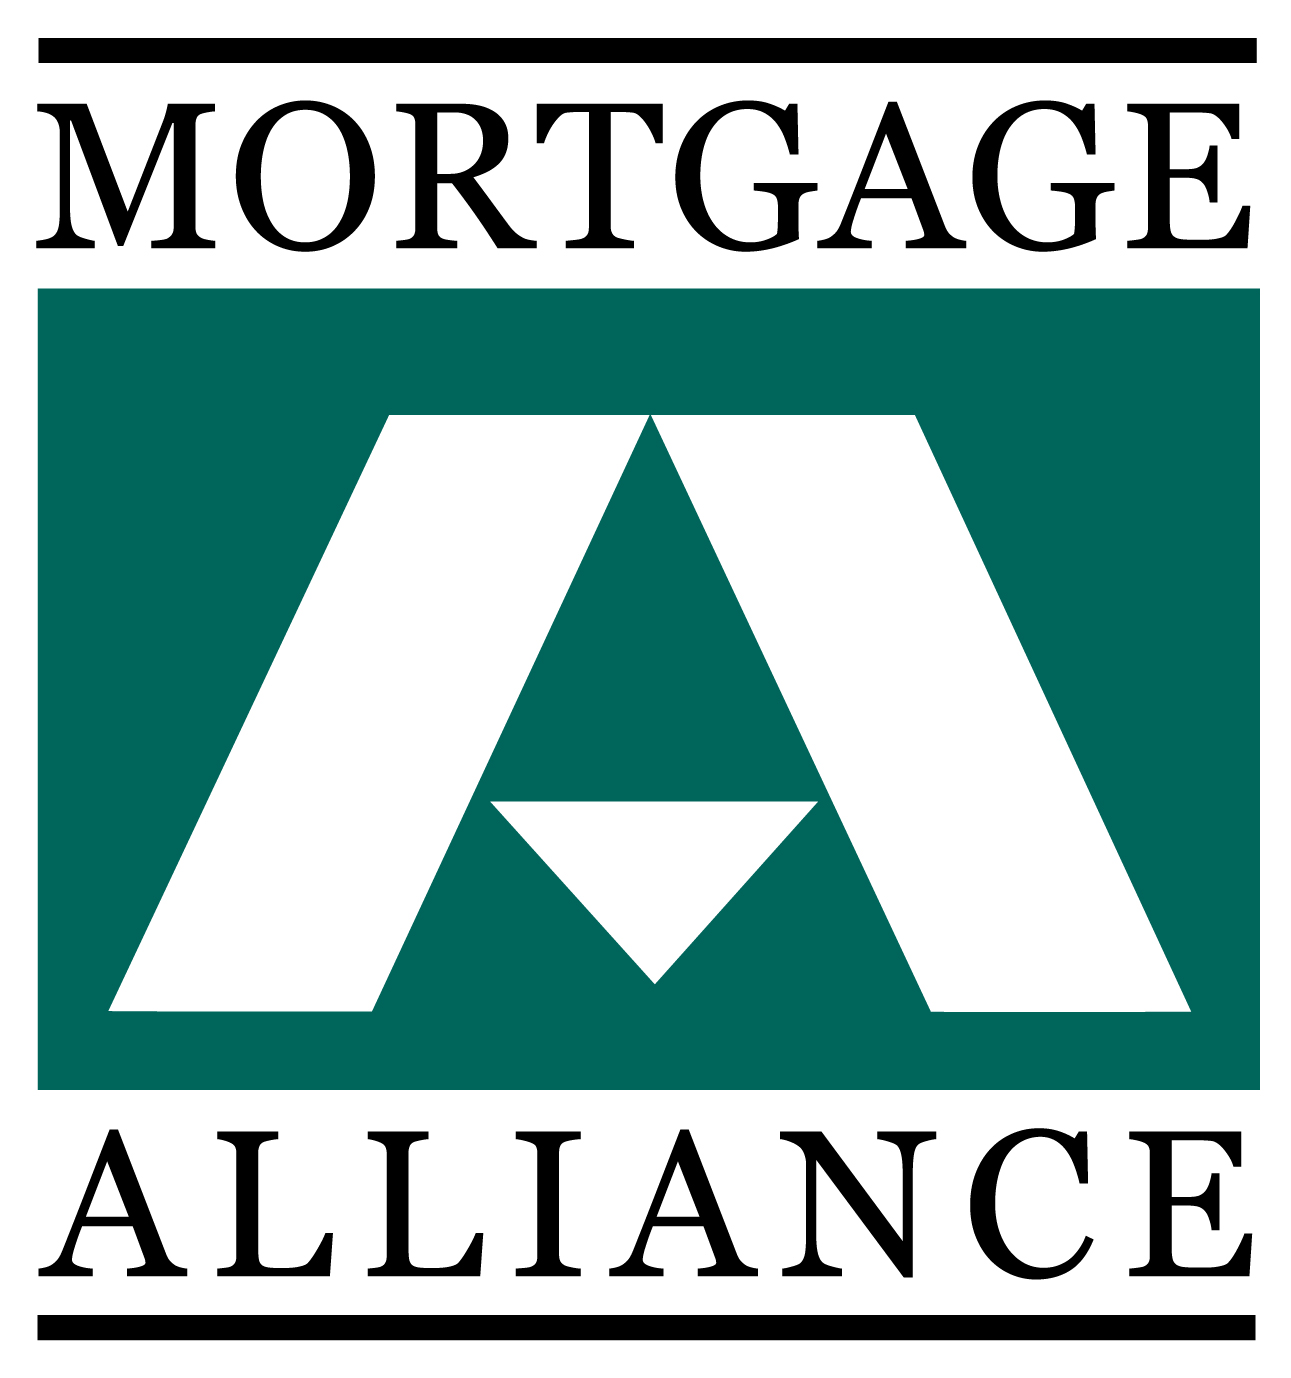 Mortgage Alliance Maximum 